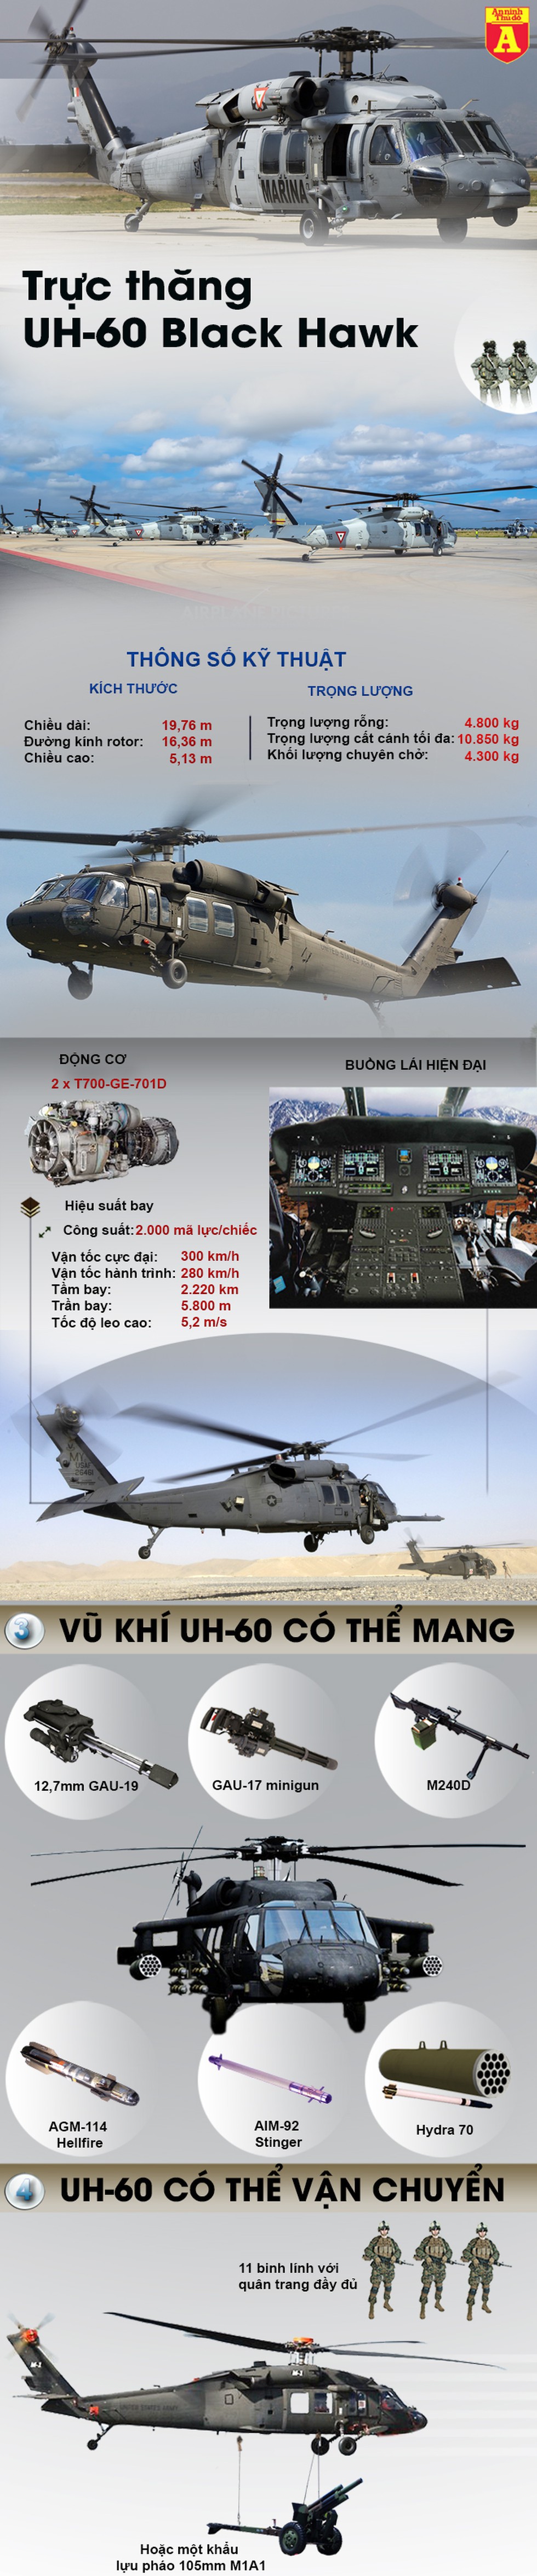 [Infographics] "Diều hâu đen" UH-60 chở tư lệnh Đài Loan rơi vì sương mù - Ảnh 1